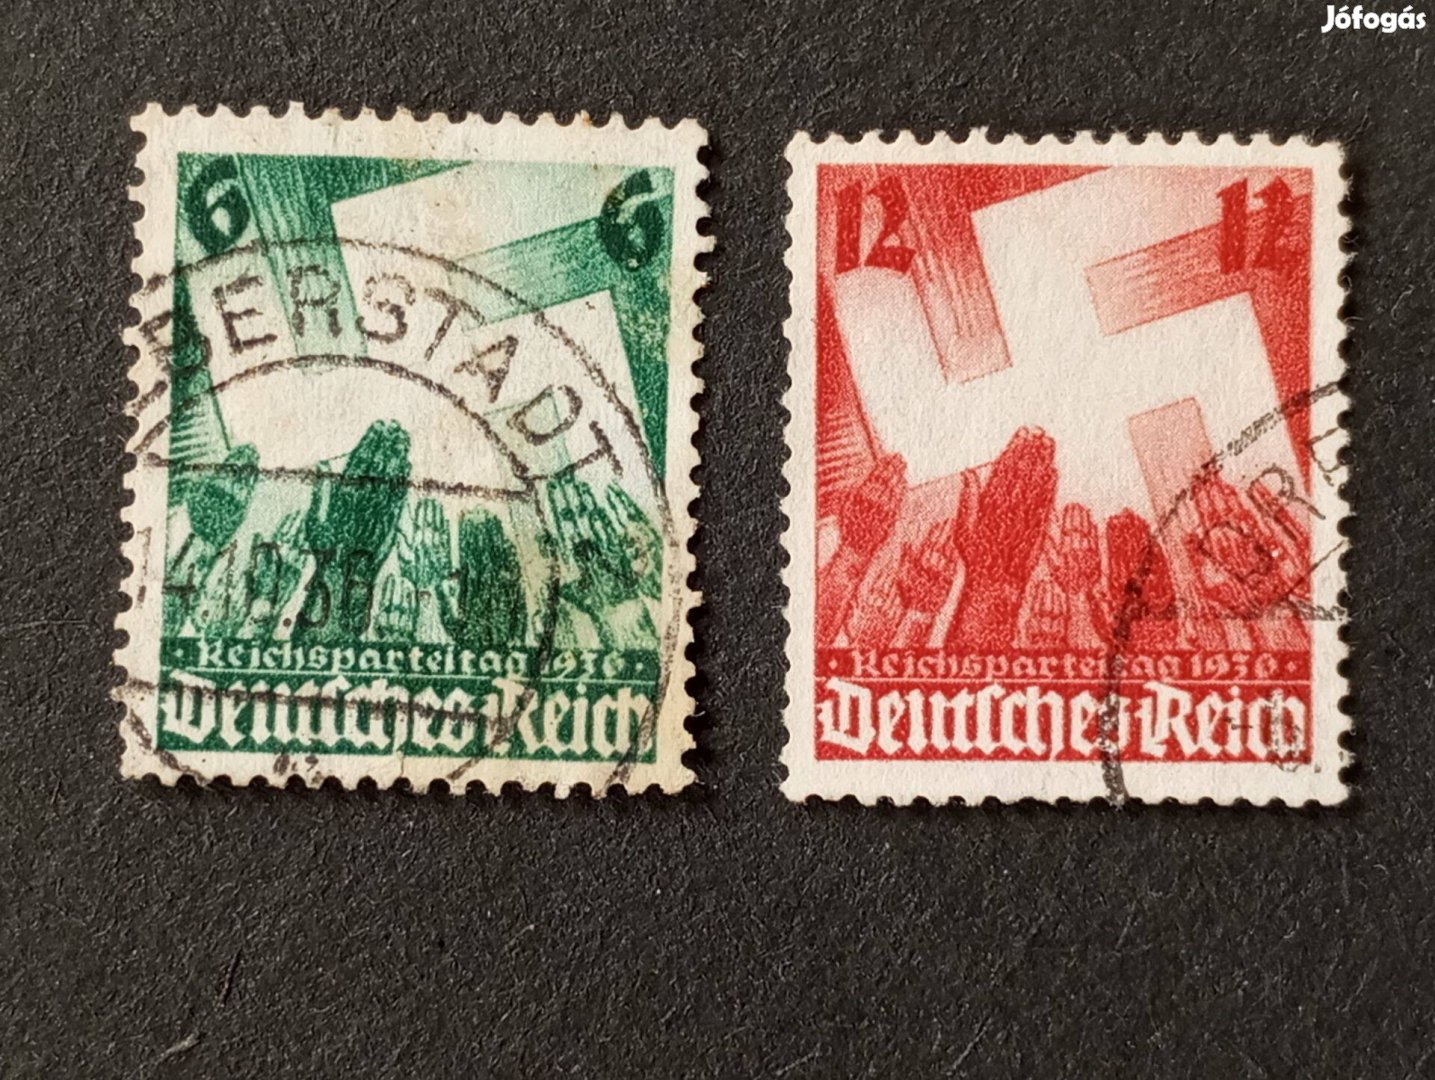 Deutsches Reich komplett bélyegsor 1936-os pártgyűlés